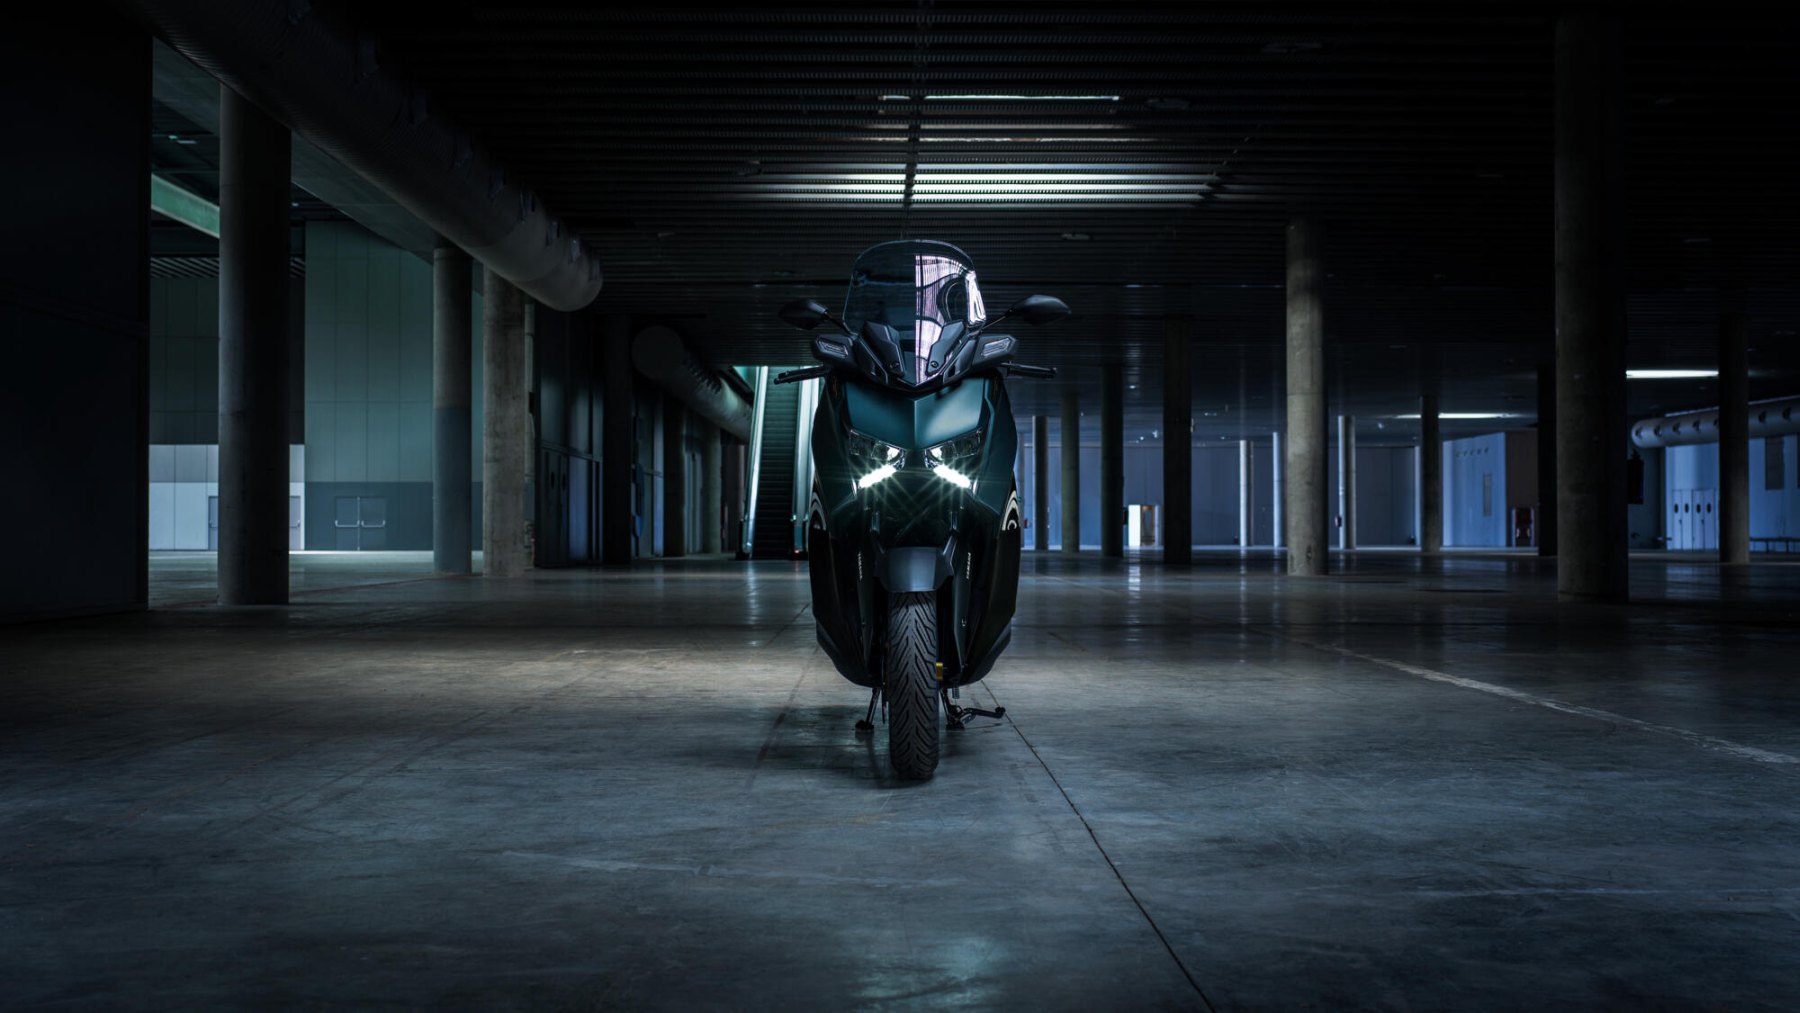 Vista frontal de la Yamaha X-Max 125cc destacando su diseño agresivo y luces LED.